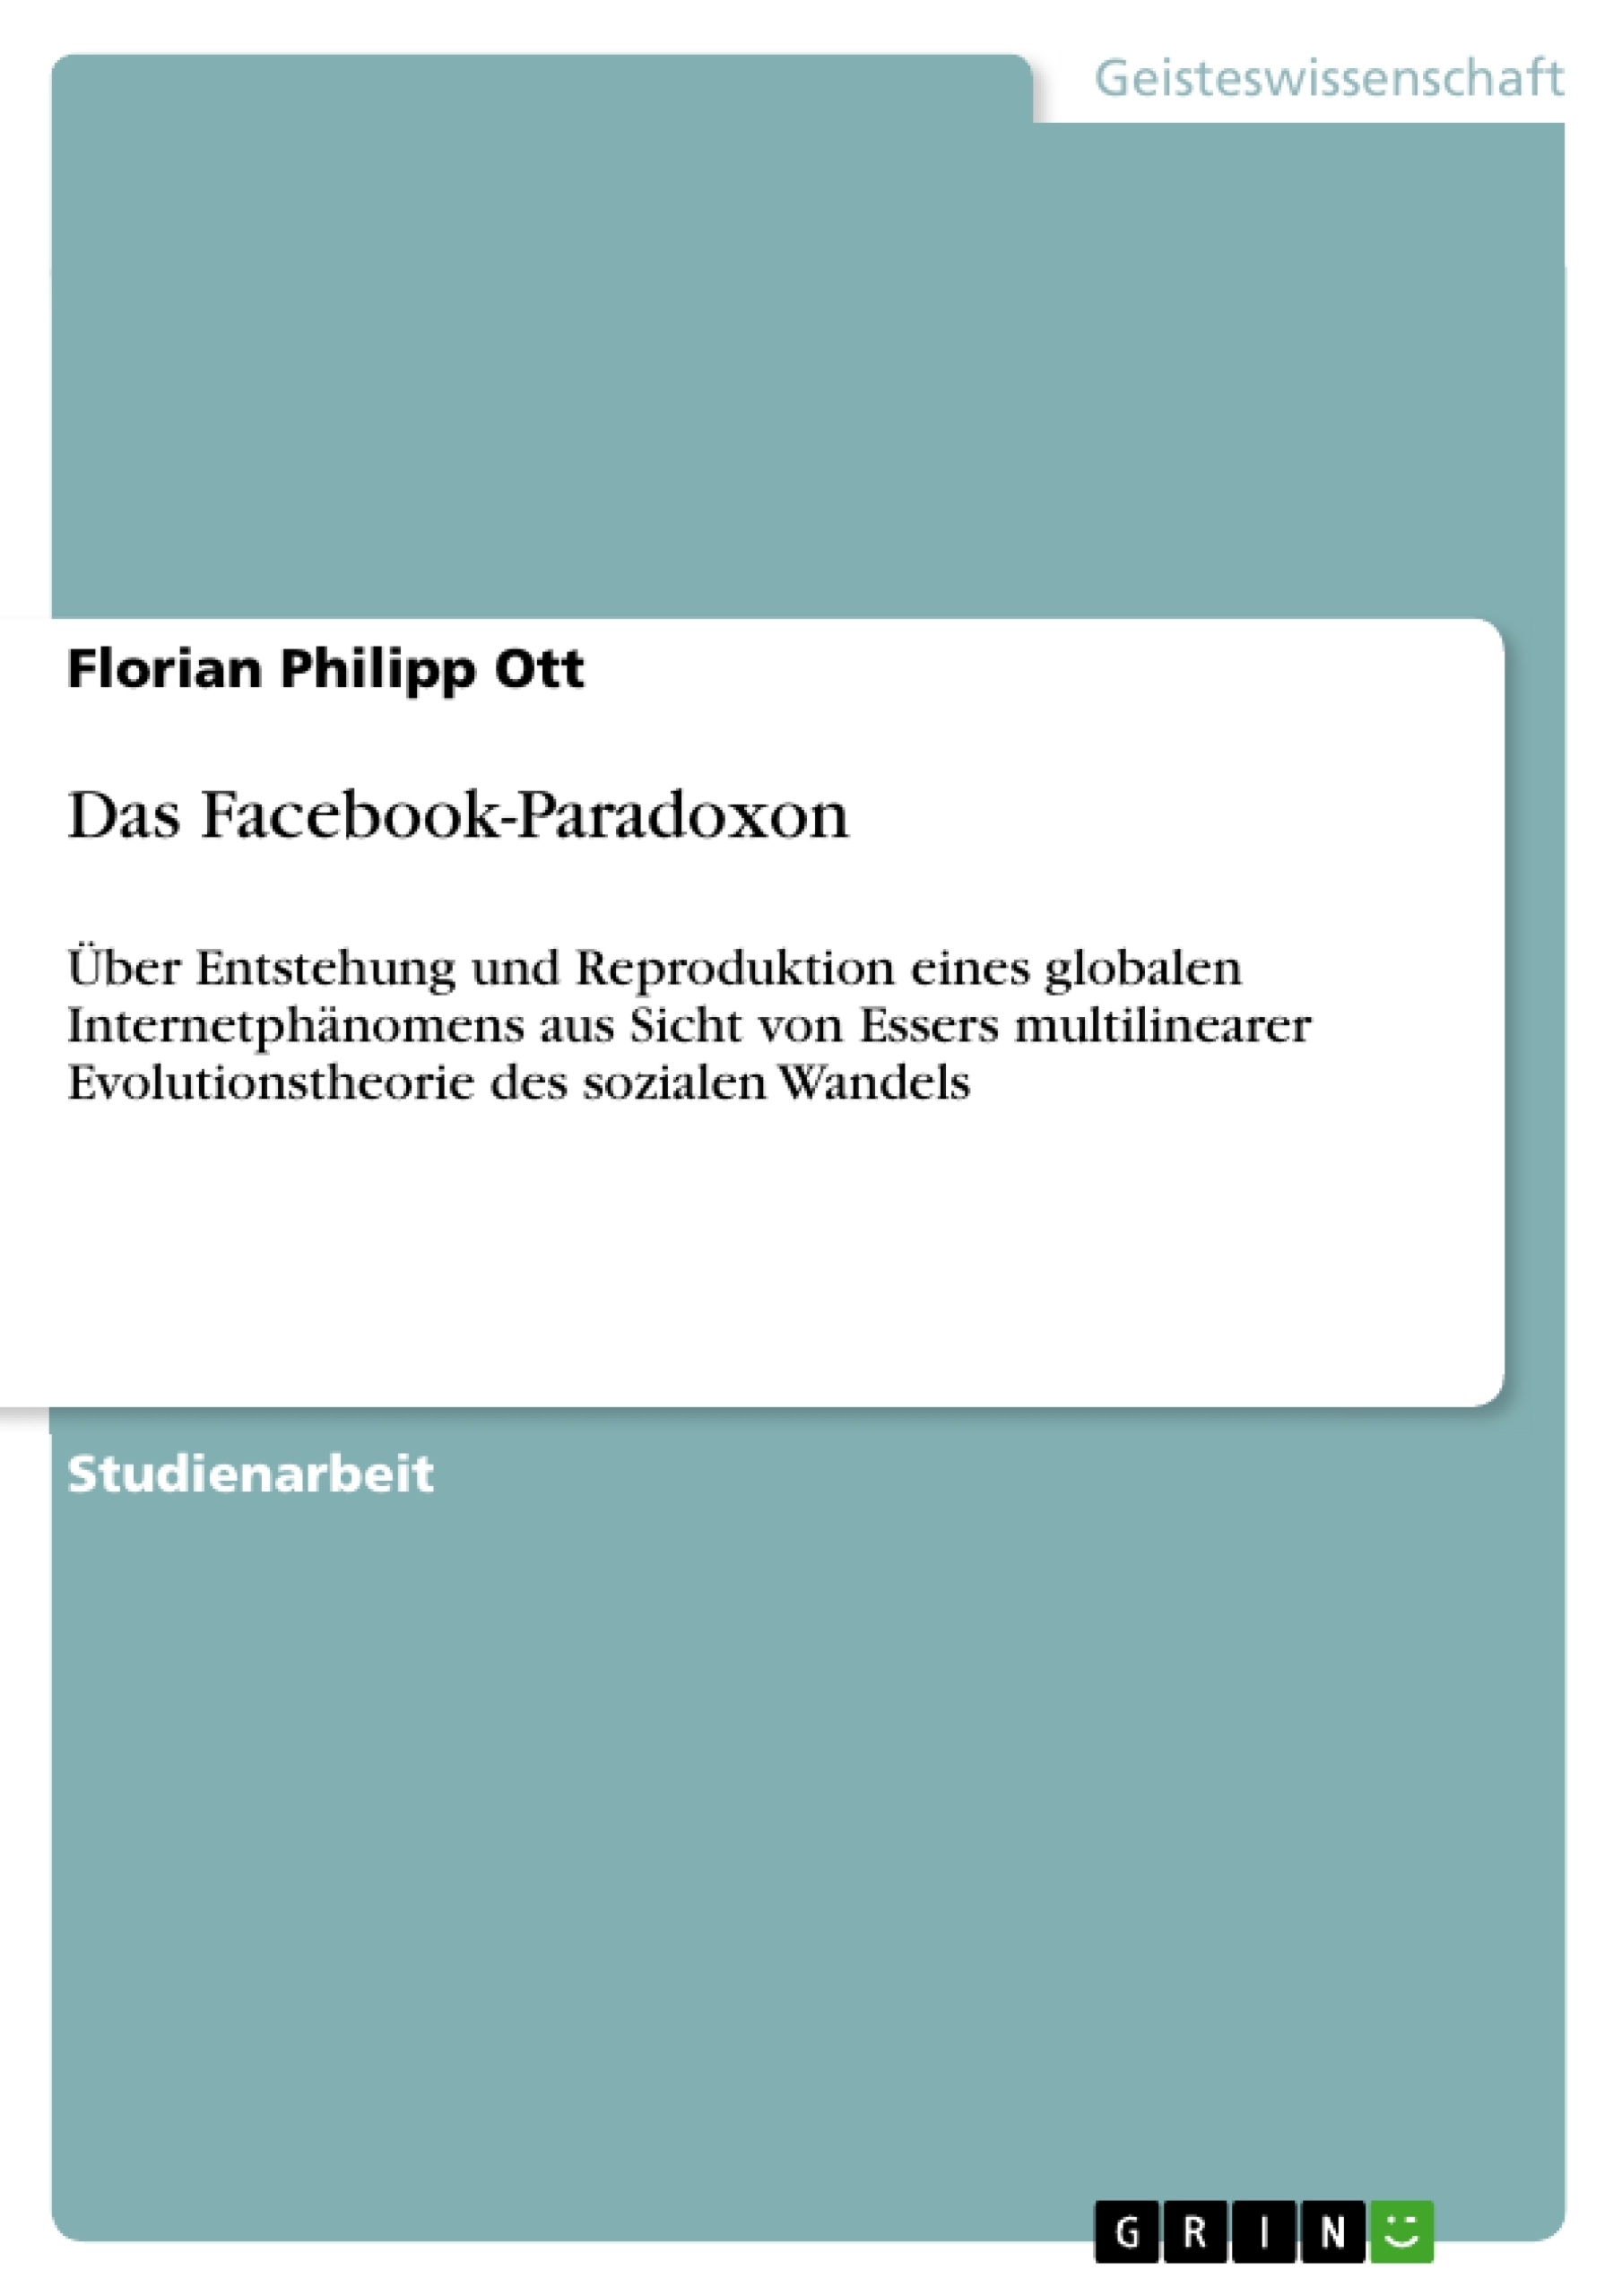 Title: Das Facebook-Paradoxon